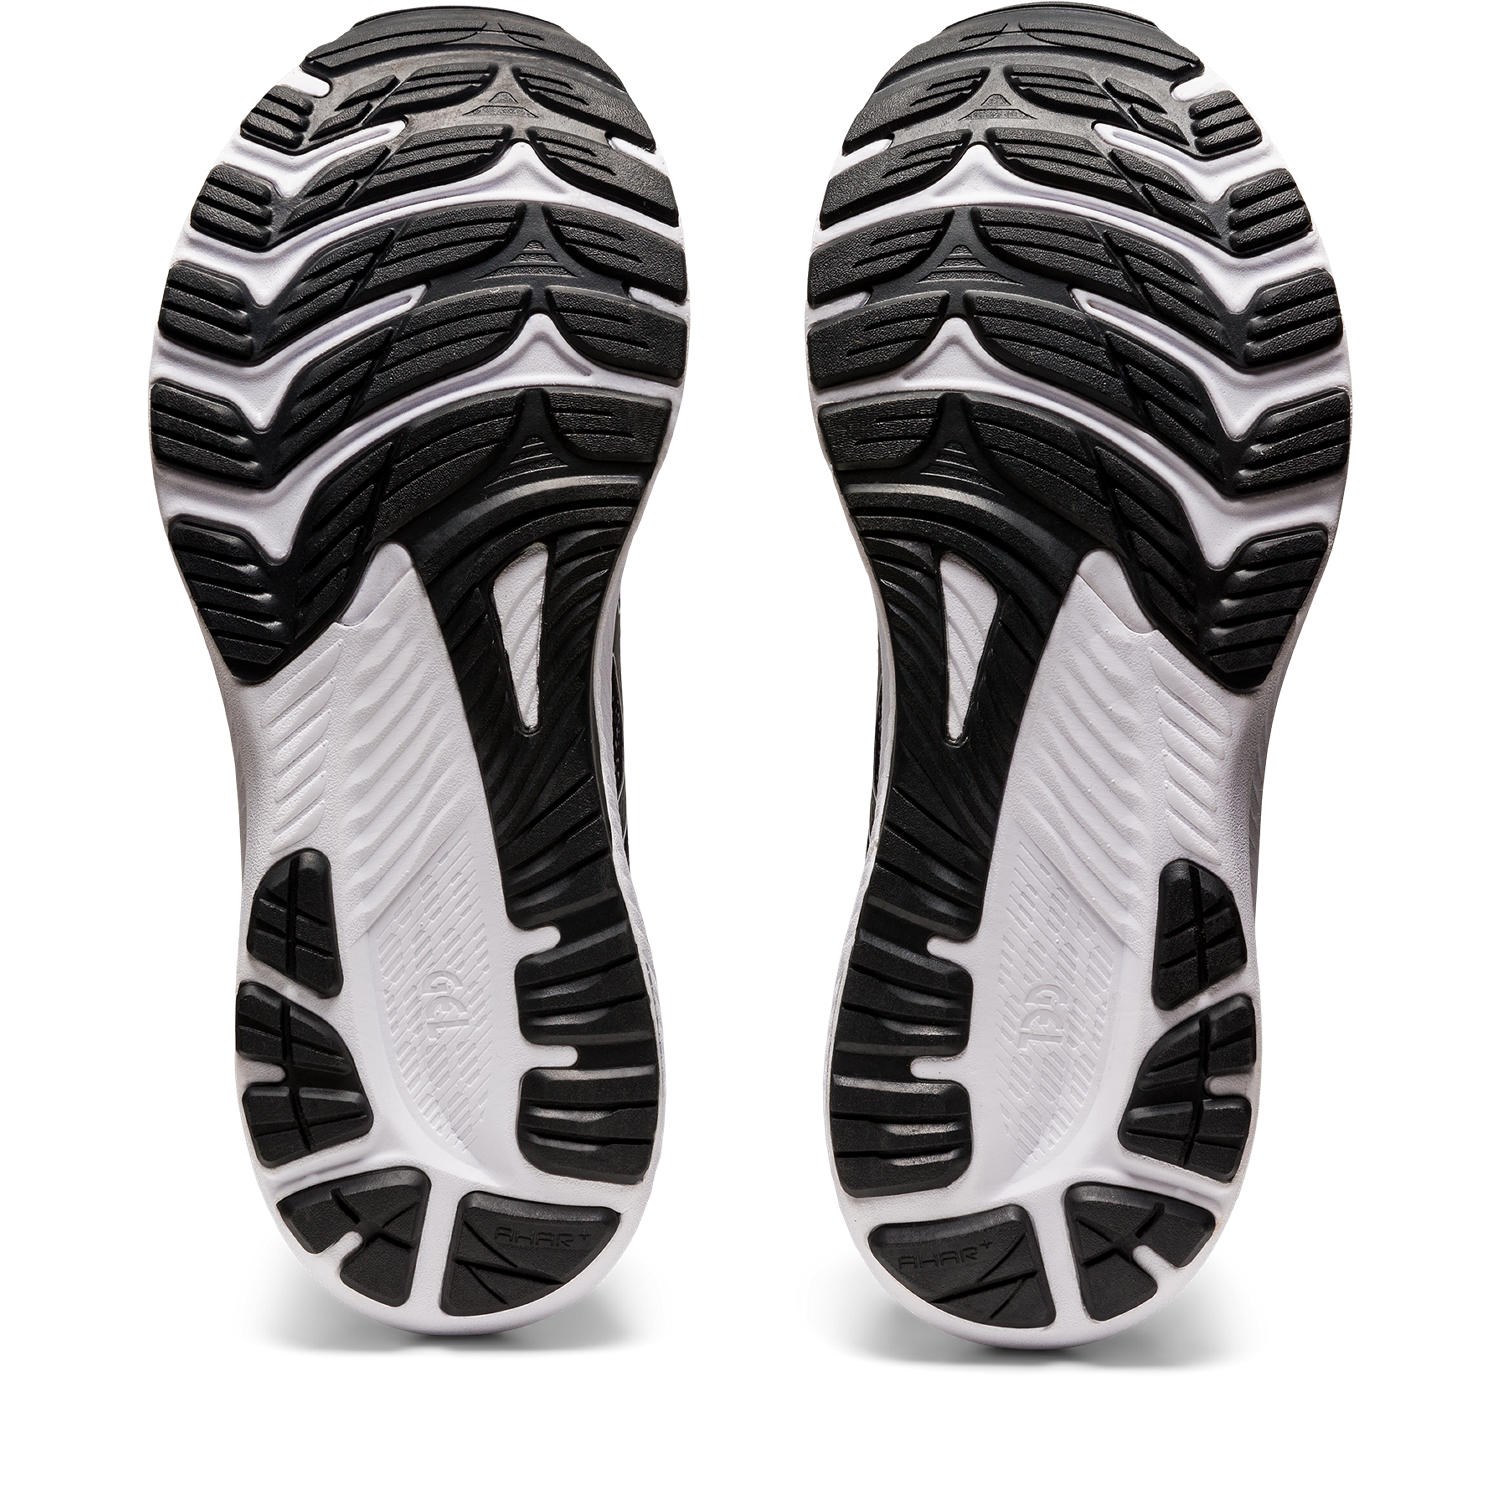 Asics Gel Kayano 29 - Mens Running Shoes - Black/White | Sportitude